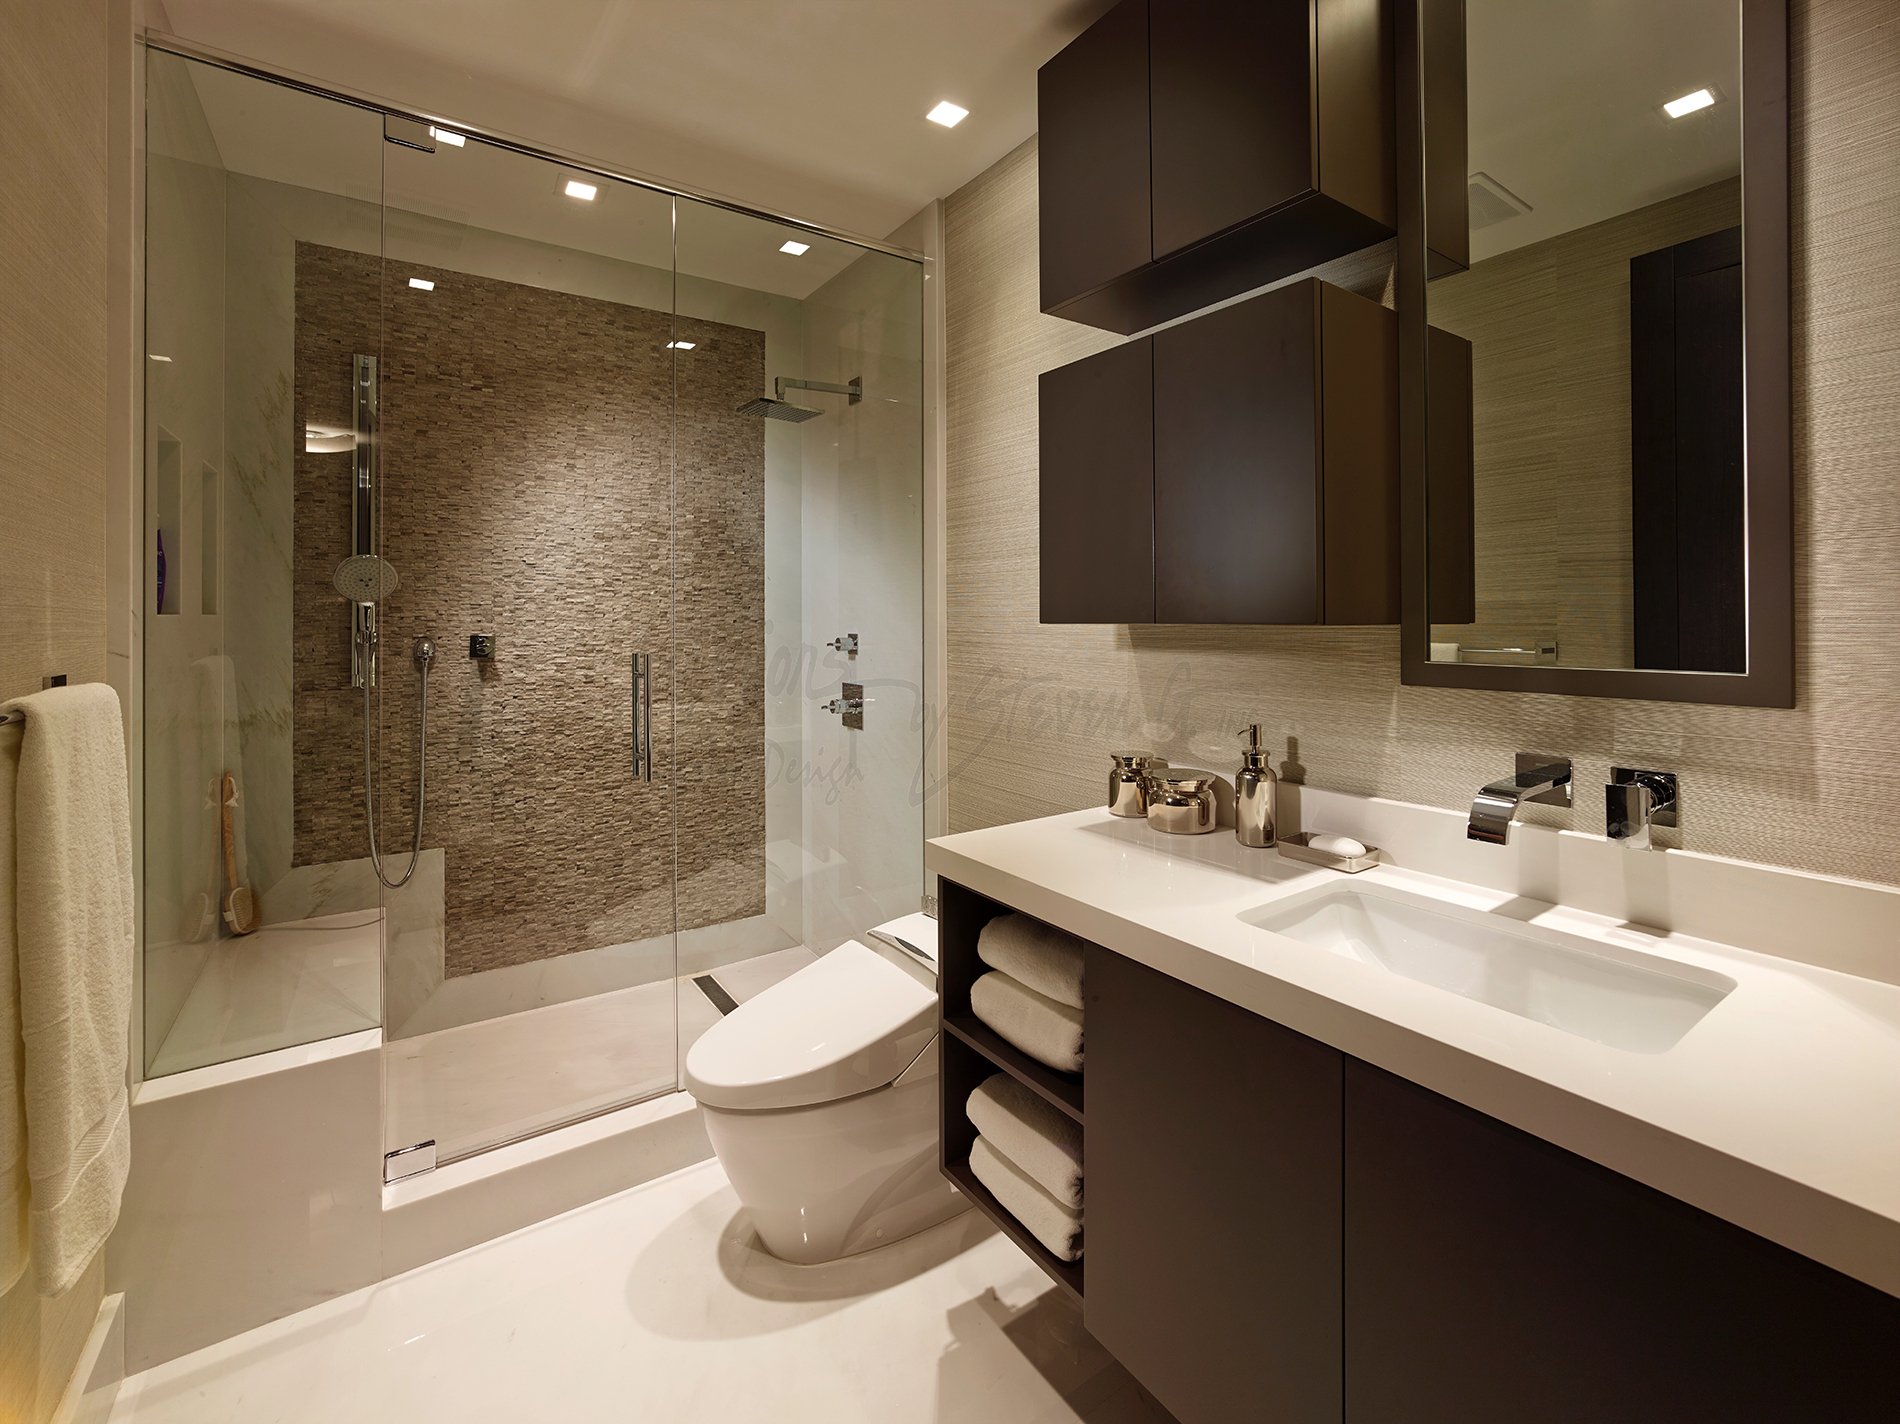 Дизайн ванной комнаты в современном стиле фото с туалетом